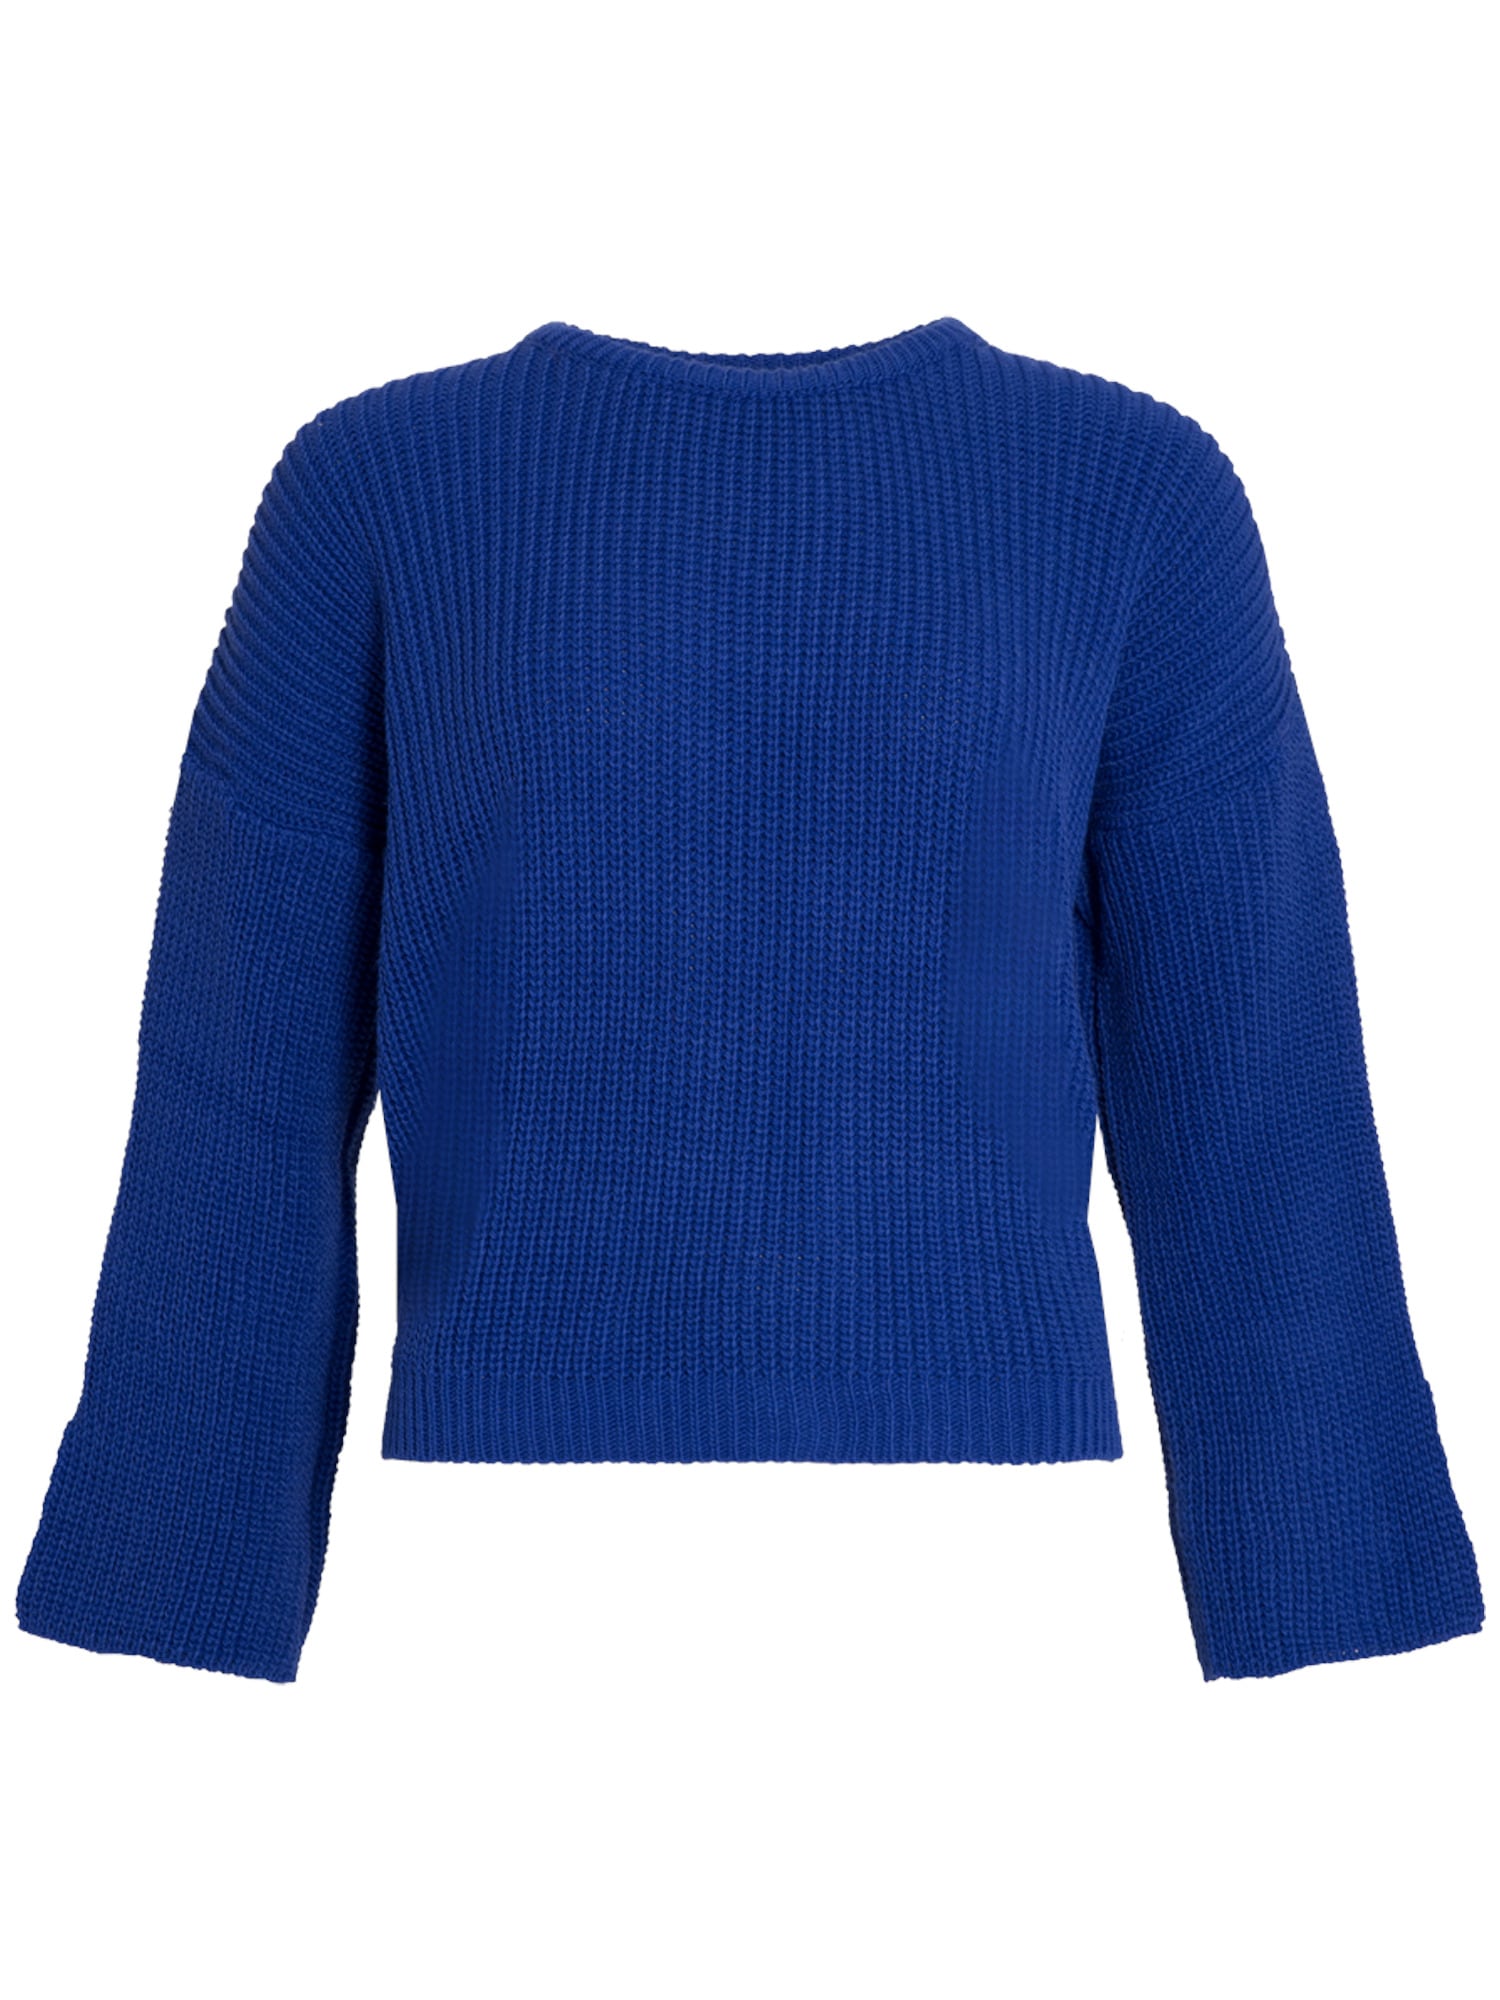 SASSYCLASSY Širok pulover  kraljevo modra